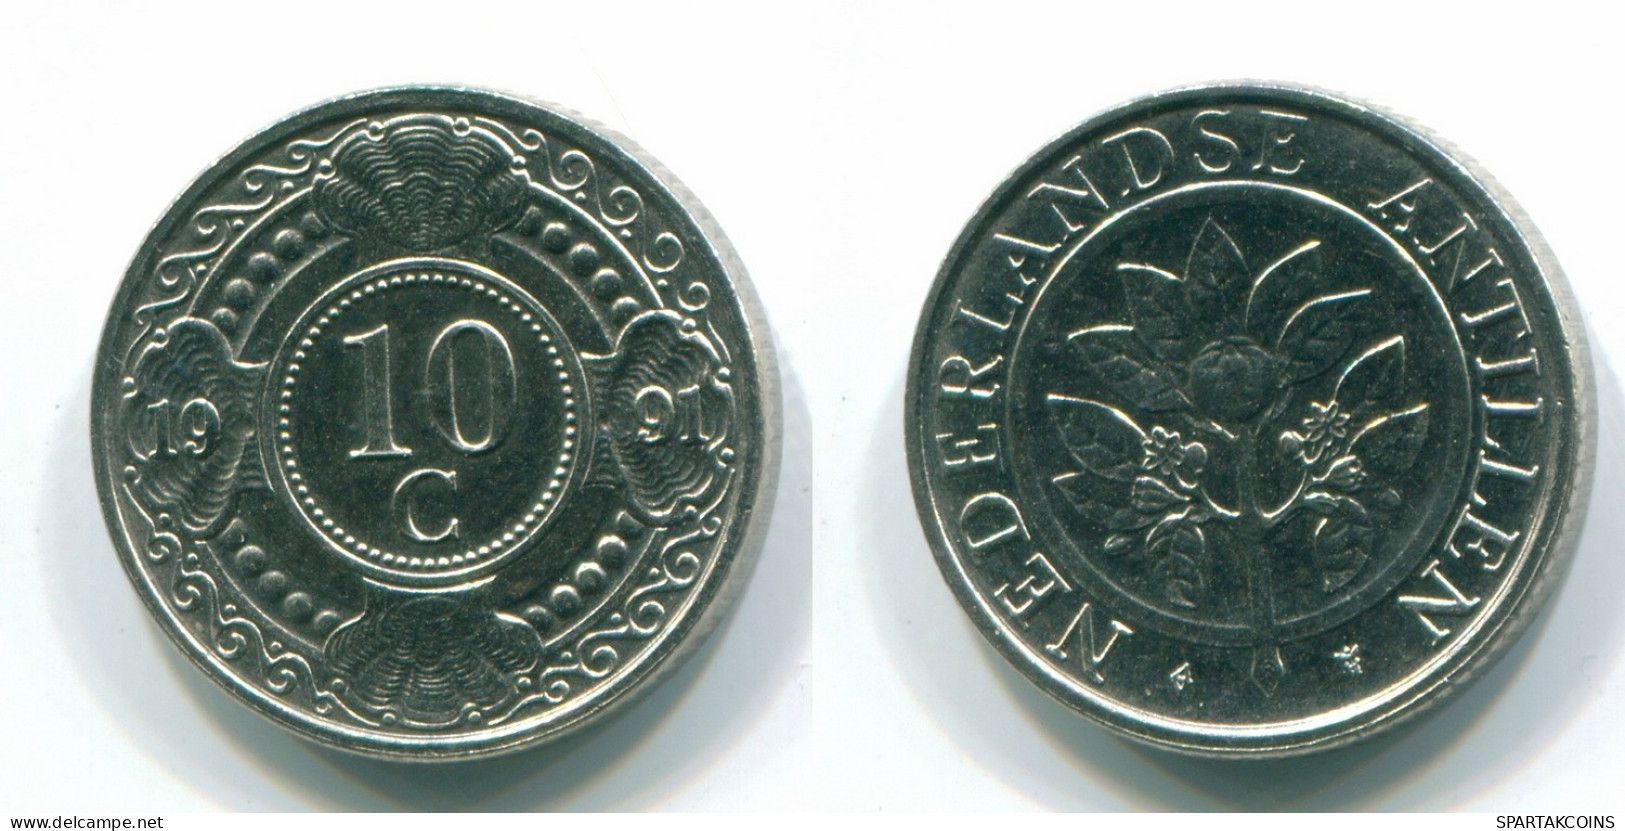 10 CENTS 1991 NETHERLANDS ANTILLES Nickel Colonial Coin #S11320.U.A - Niederländische Antillen